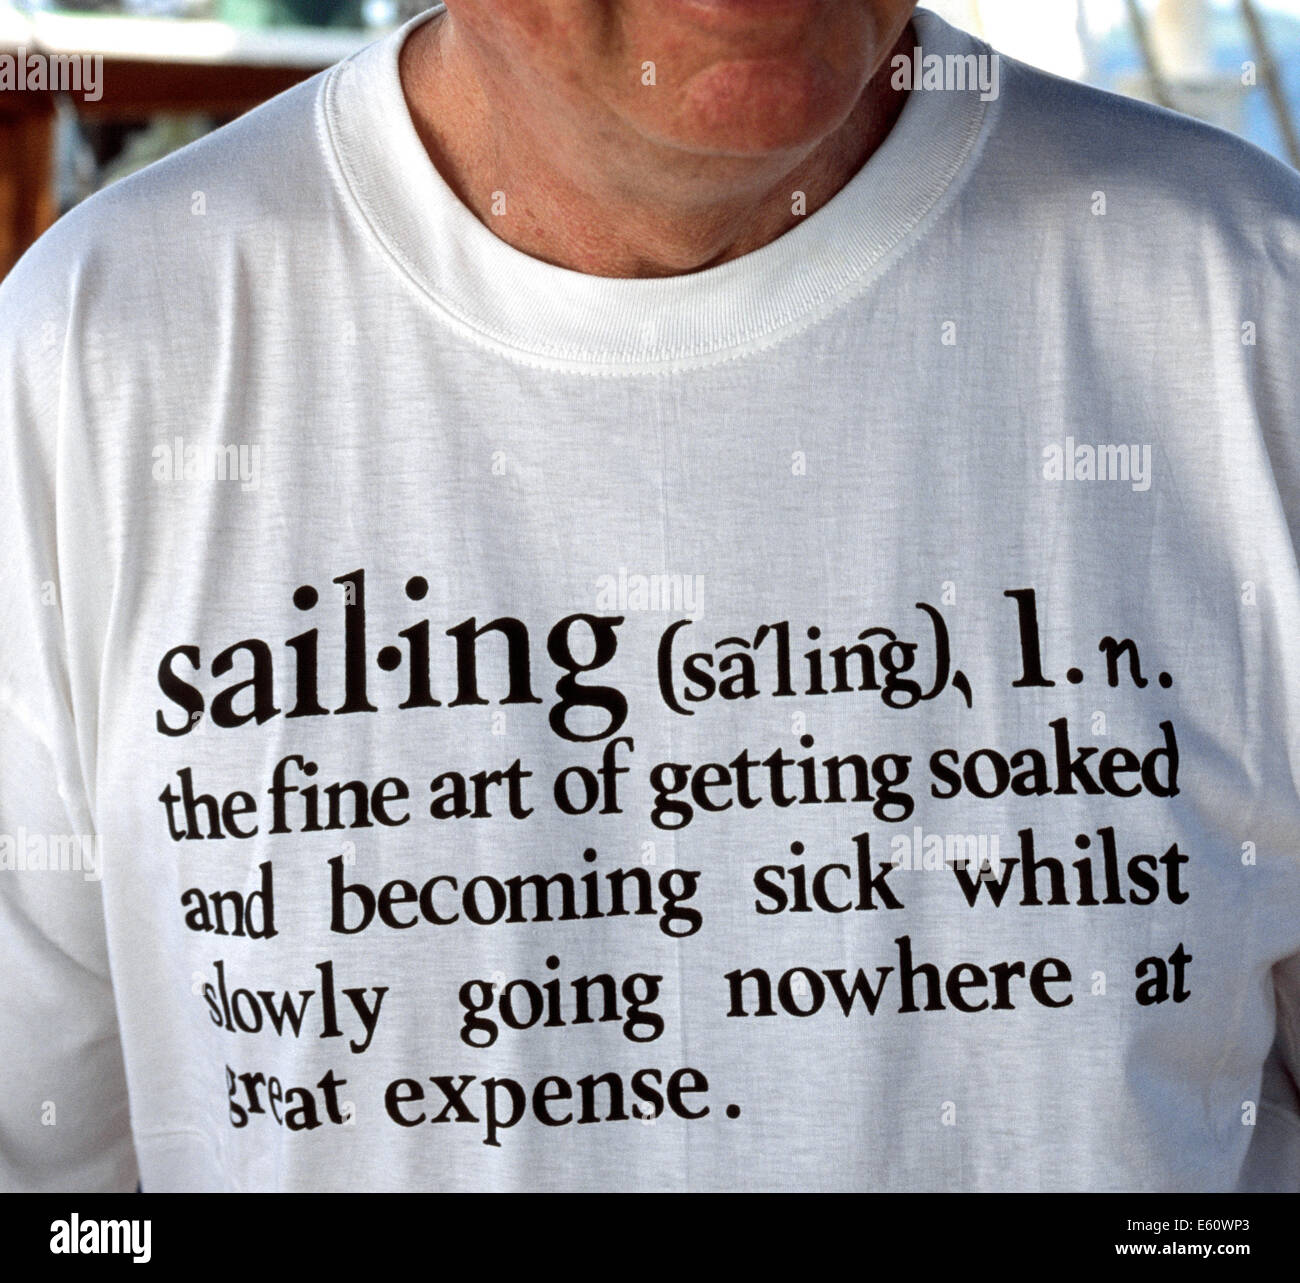 Un homme à bord d'un voilier dans la mer des Caraïbes porte un T-shirt blanc avec écrit que donne un dictionnaire humoristique-comme définition du mot "mauvaise". Banque D'Images